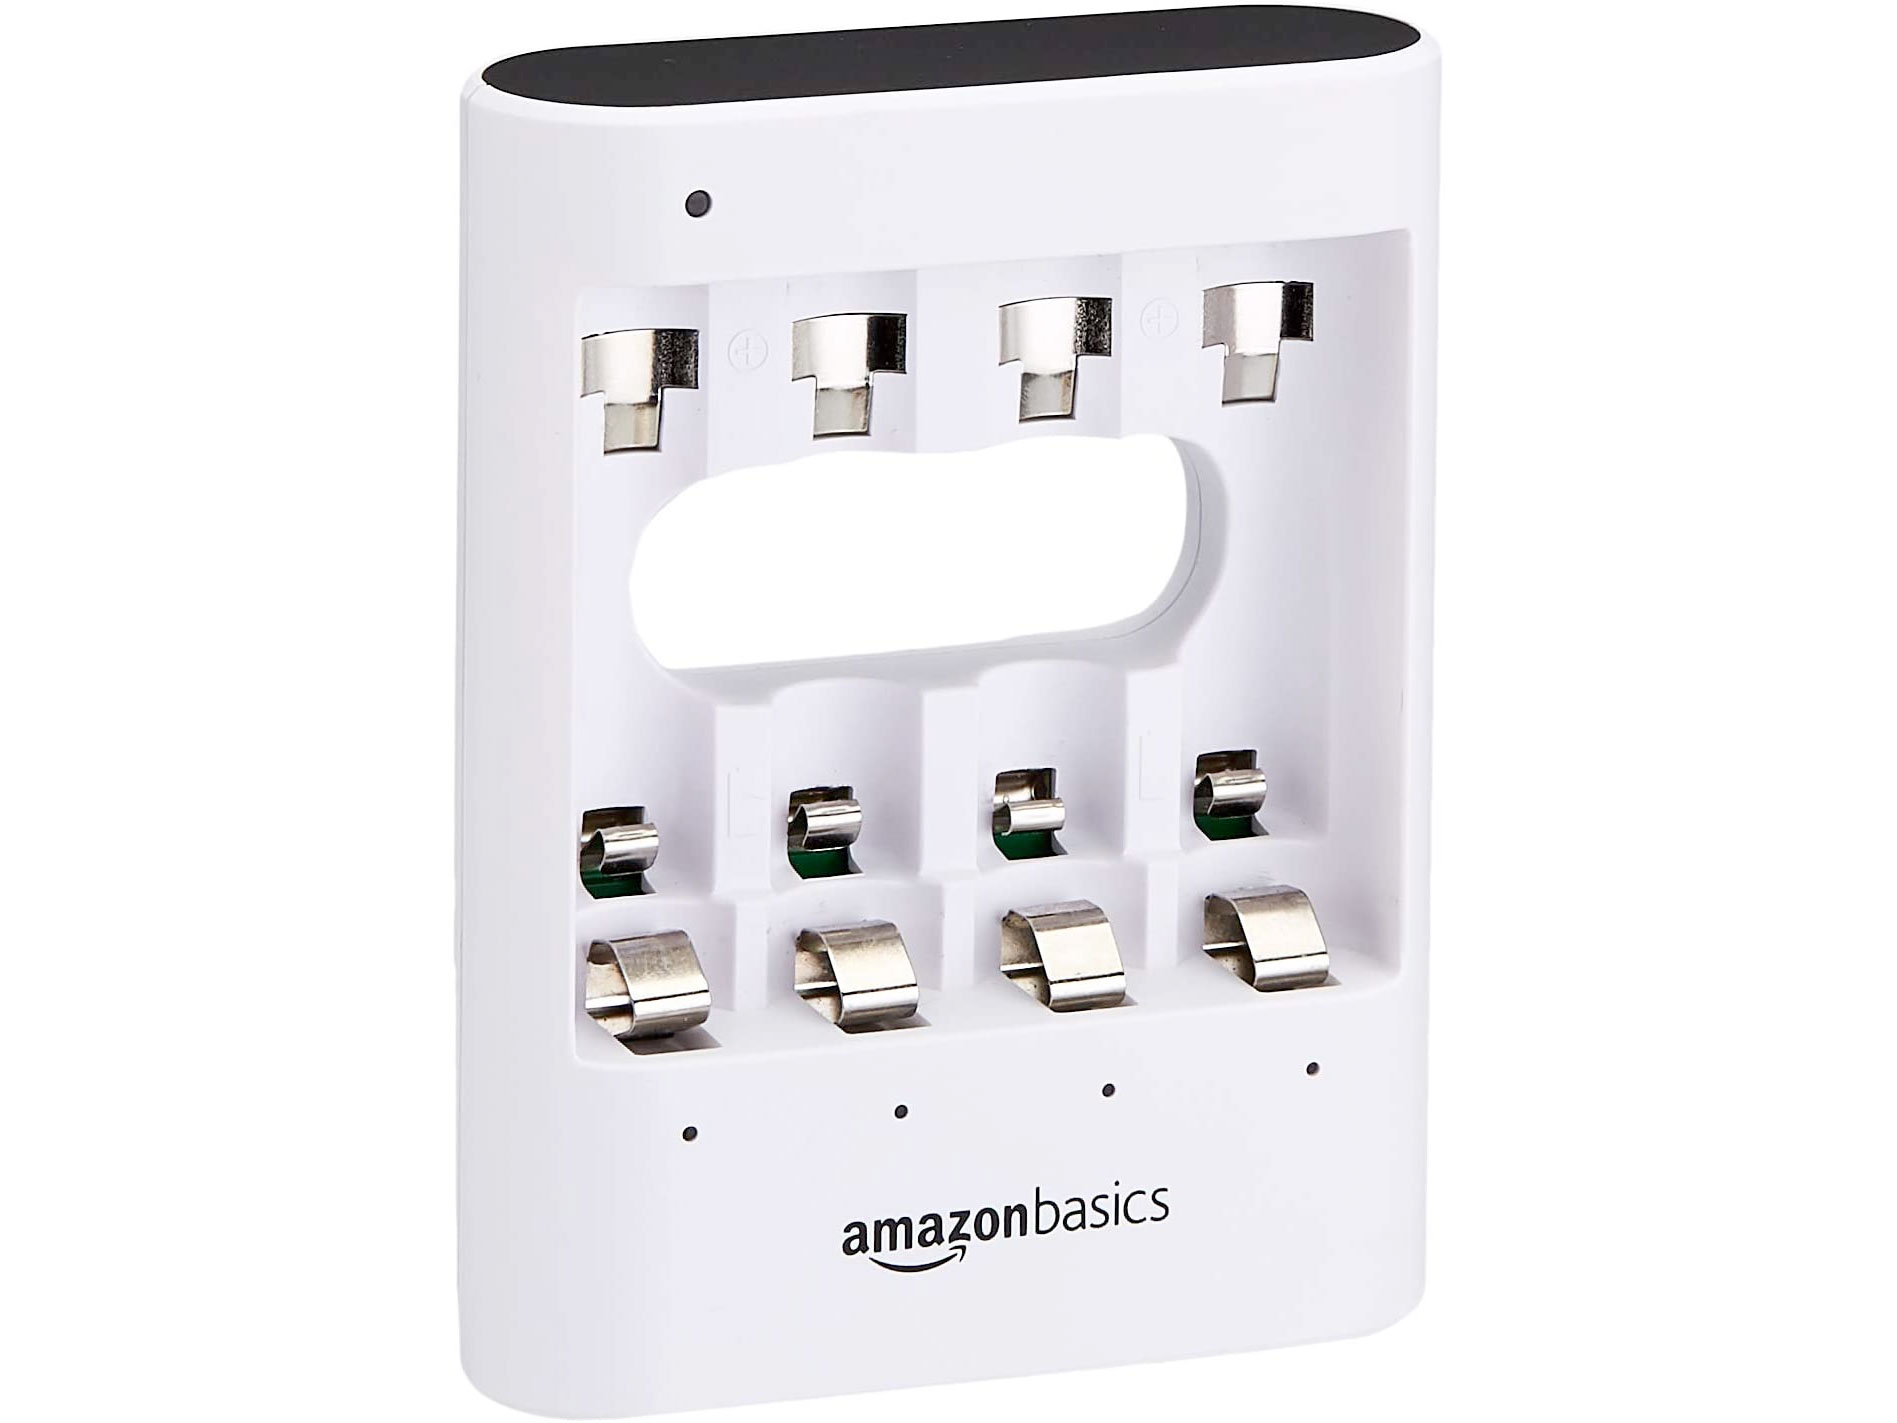 Amazon Basics Rapid USB AA/AAA Batteries Charger只賣$15.47